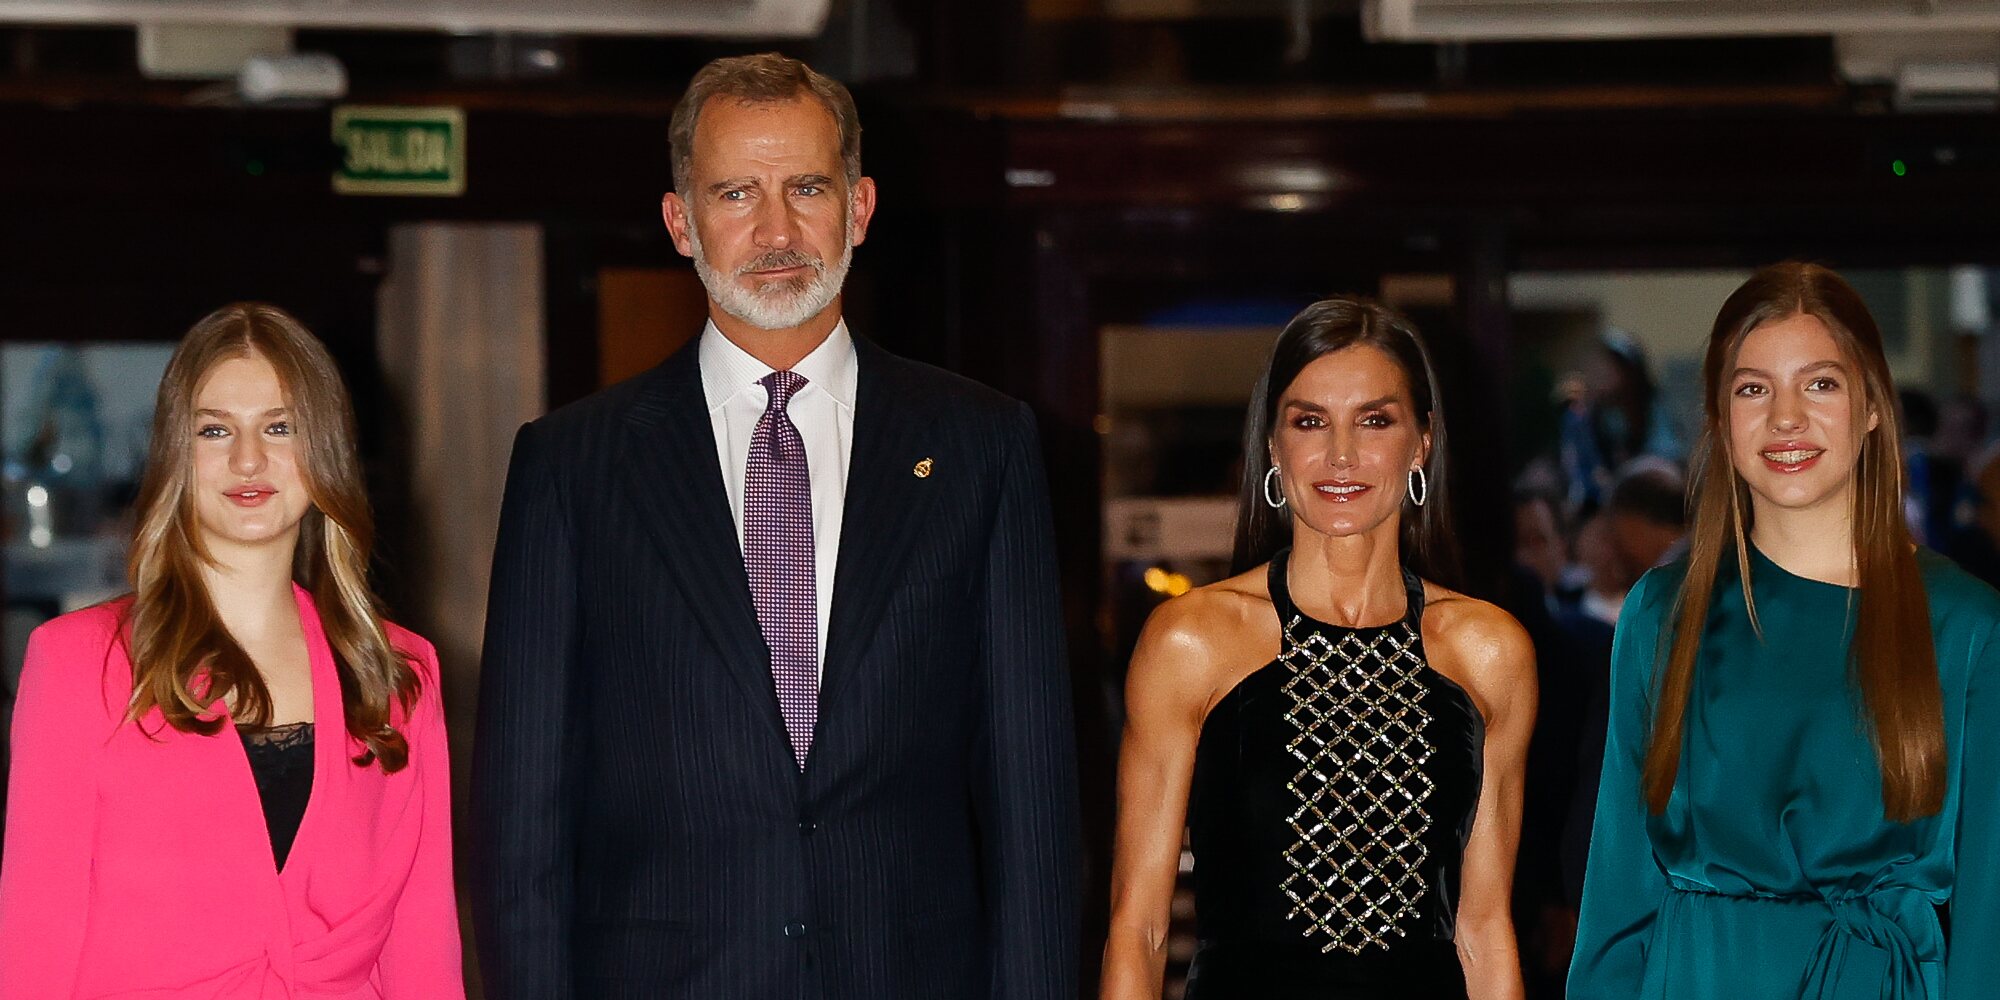 Los Reyes Felipe VI y Letizia, acompañados de la Princesa Leonor y la Infanta Sofía, presiden el XXX Concierto Premios Princesa de Asturias